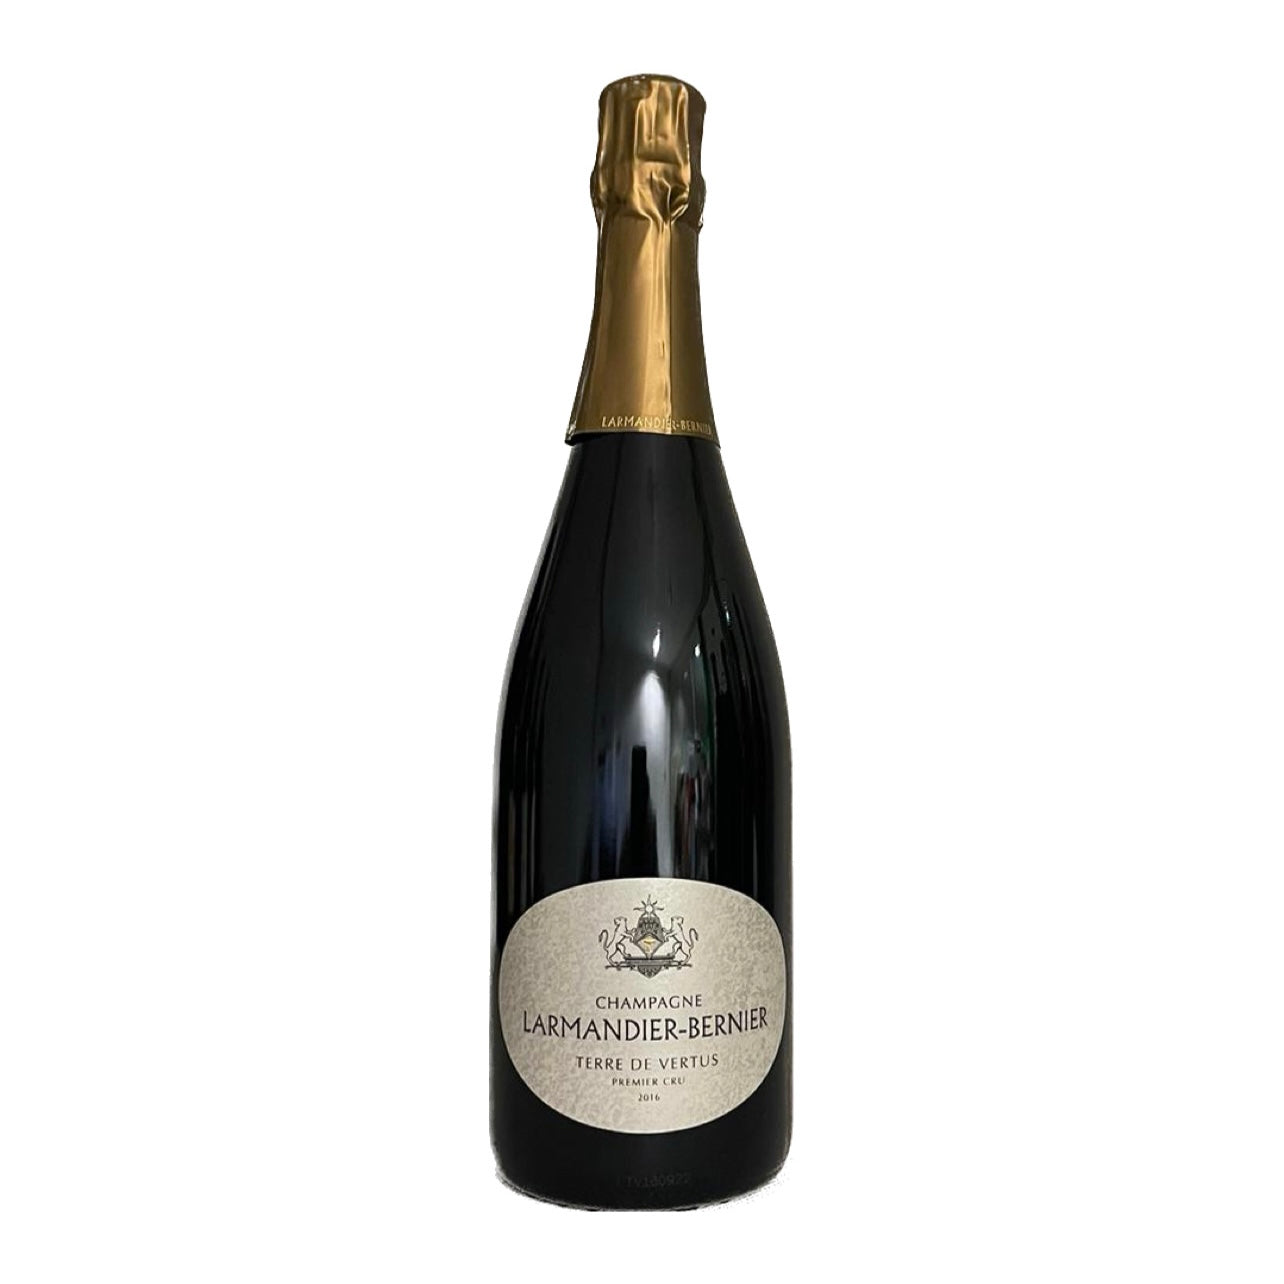 Champagne Terre de Vertus Larmandier-Bernier